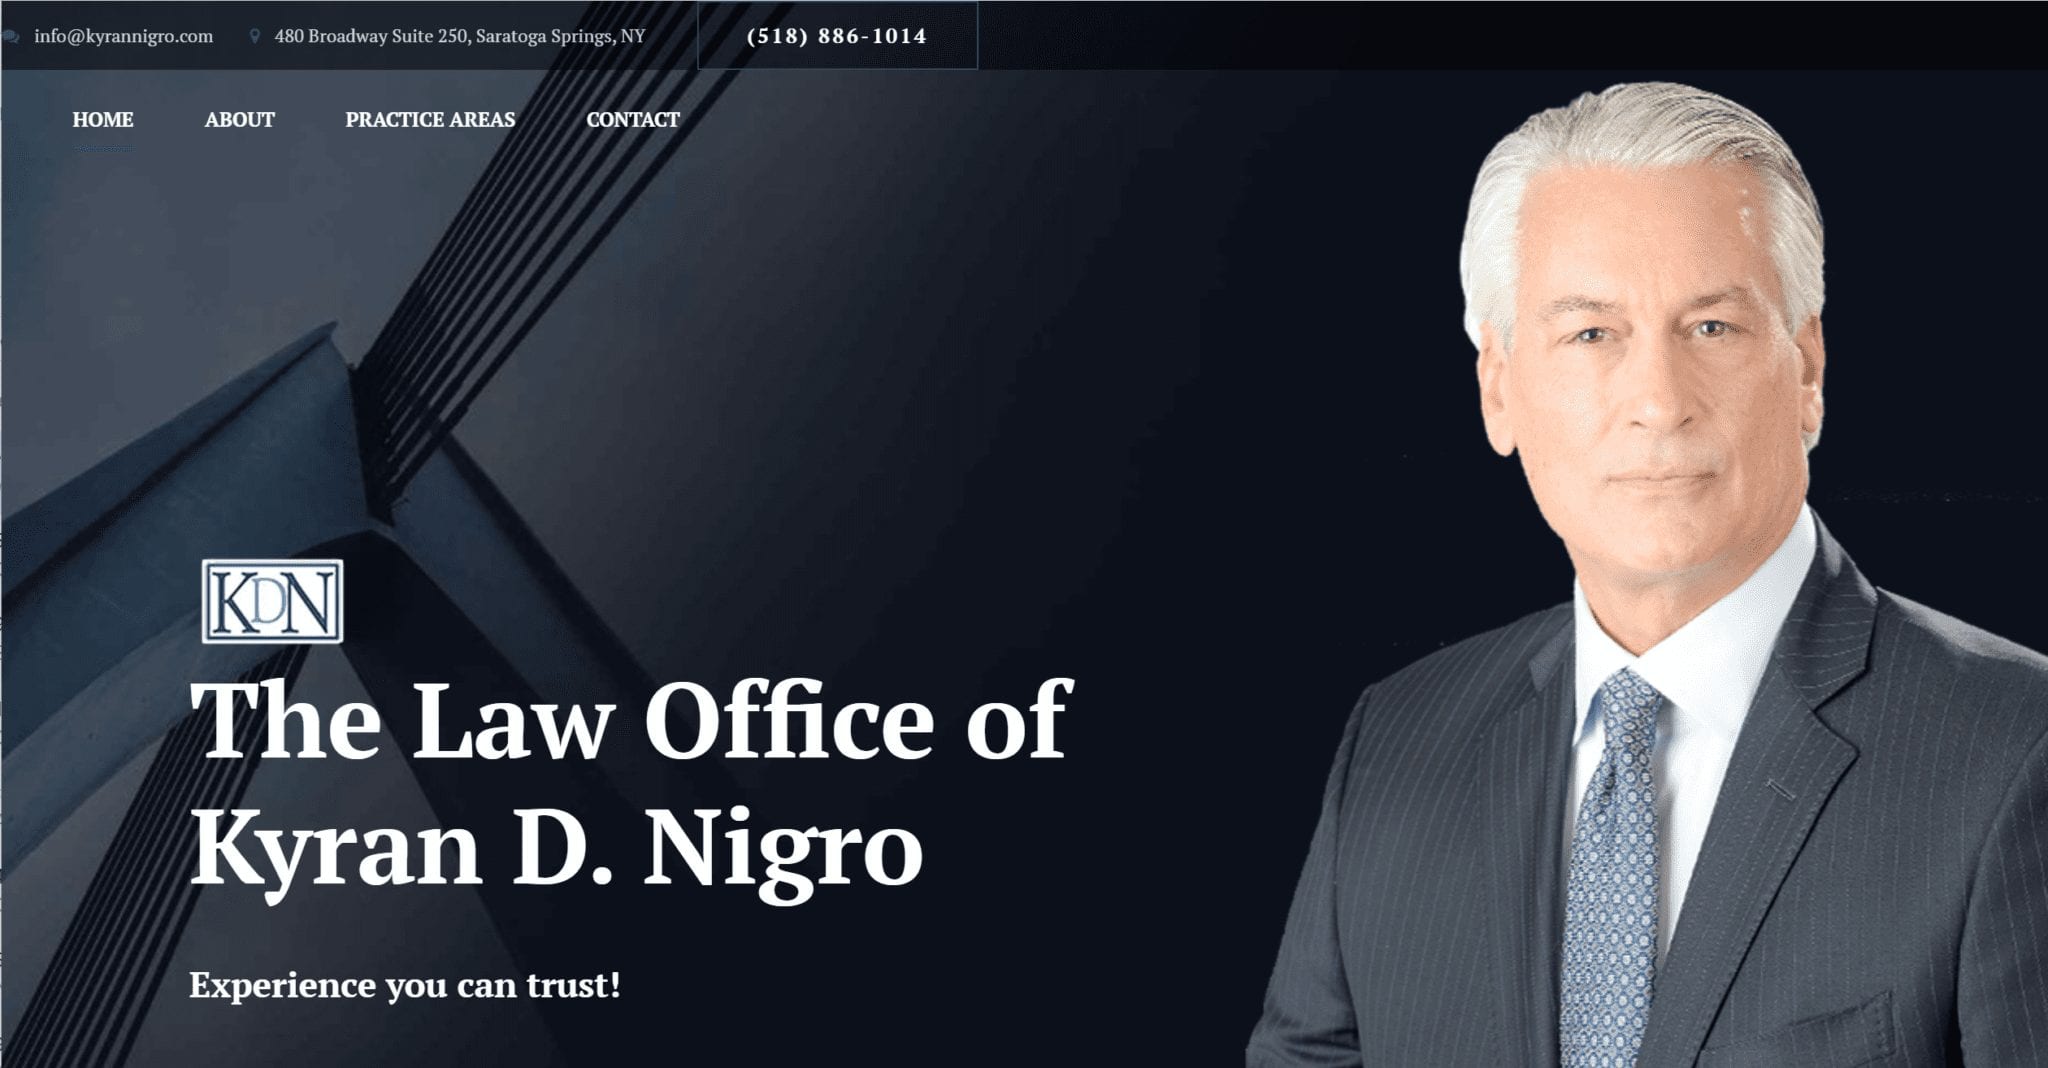 Law office of Kyran Nigro - Client of Media Pillars